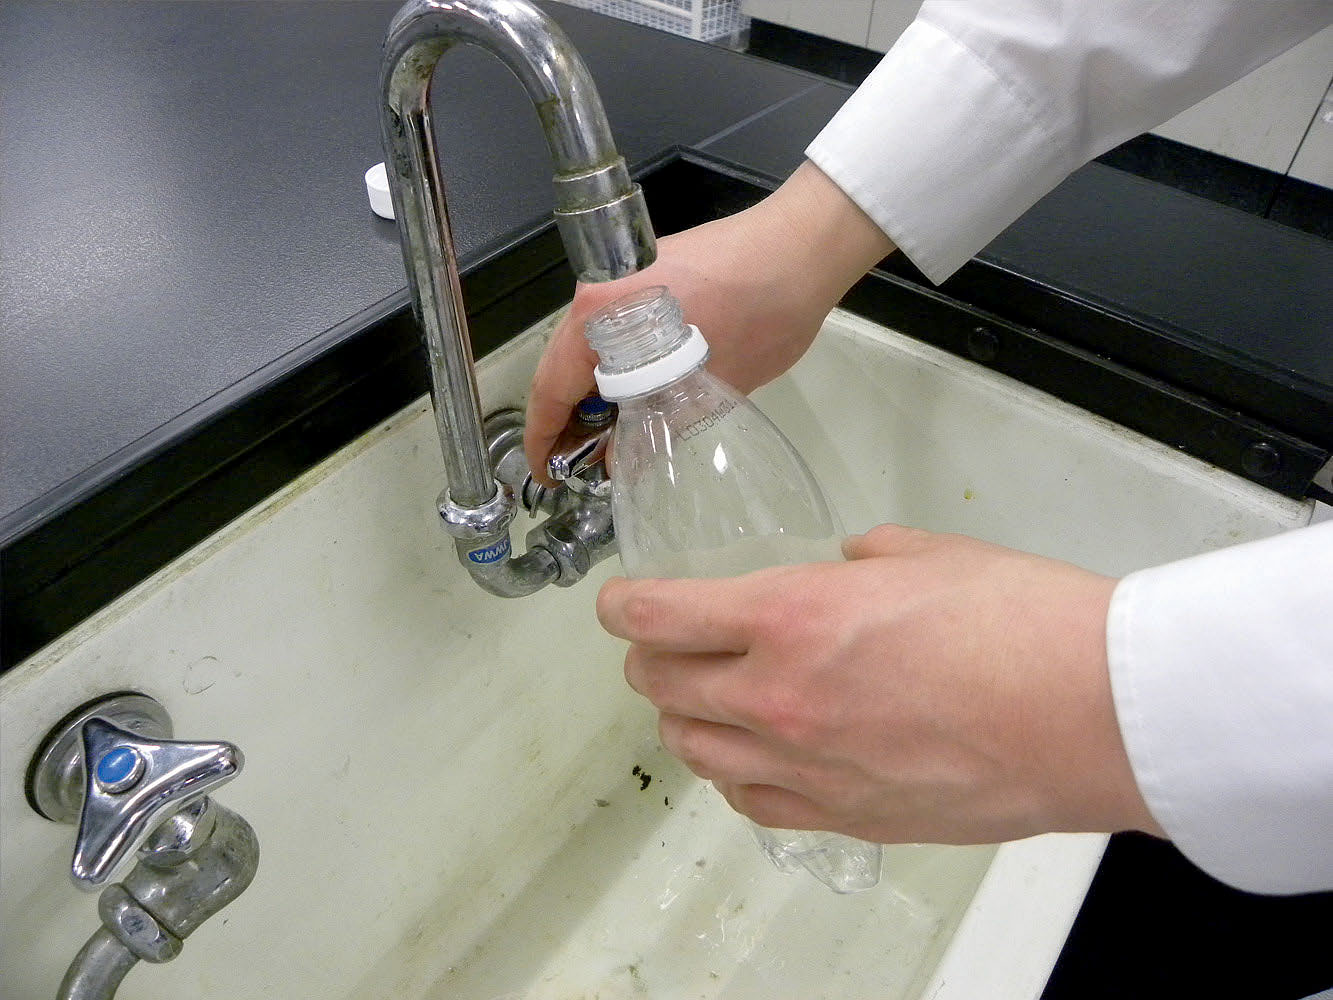 実験操作1: ペットボトルに少量の水を入れ，蓋を閉めてからよく振る。中を十分に濡らしたら，水を流しに捨てる。